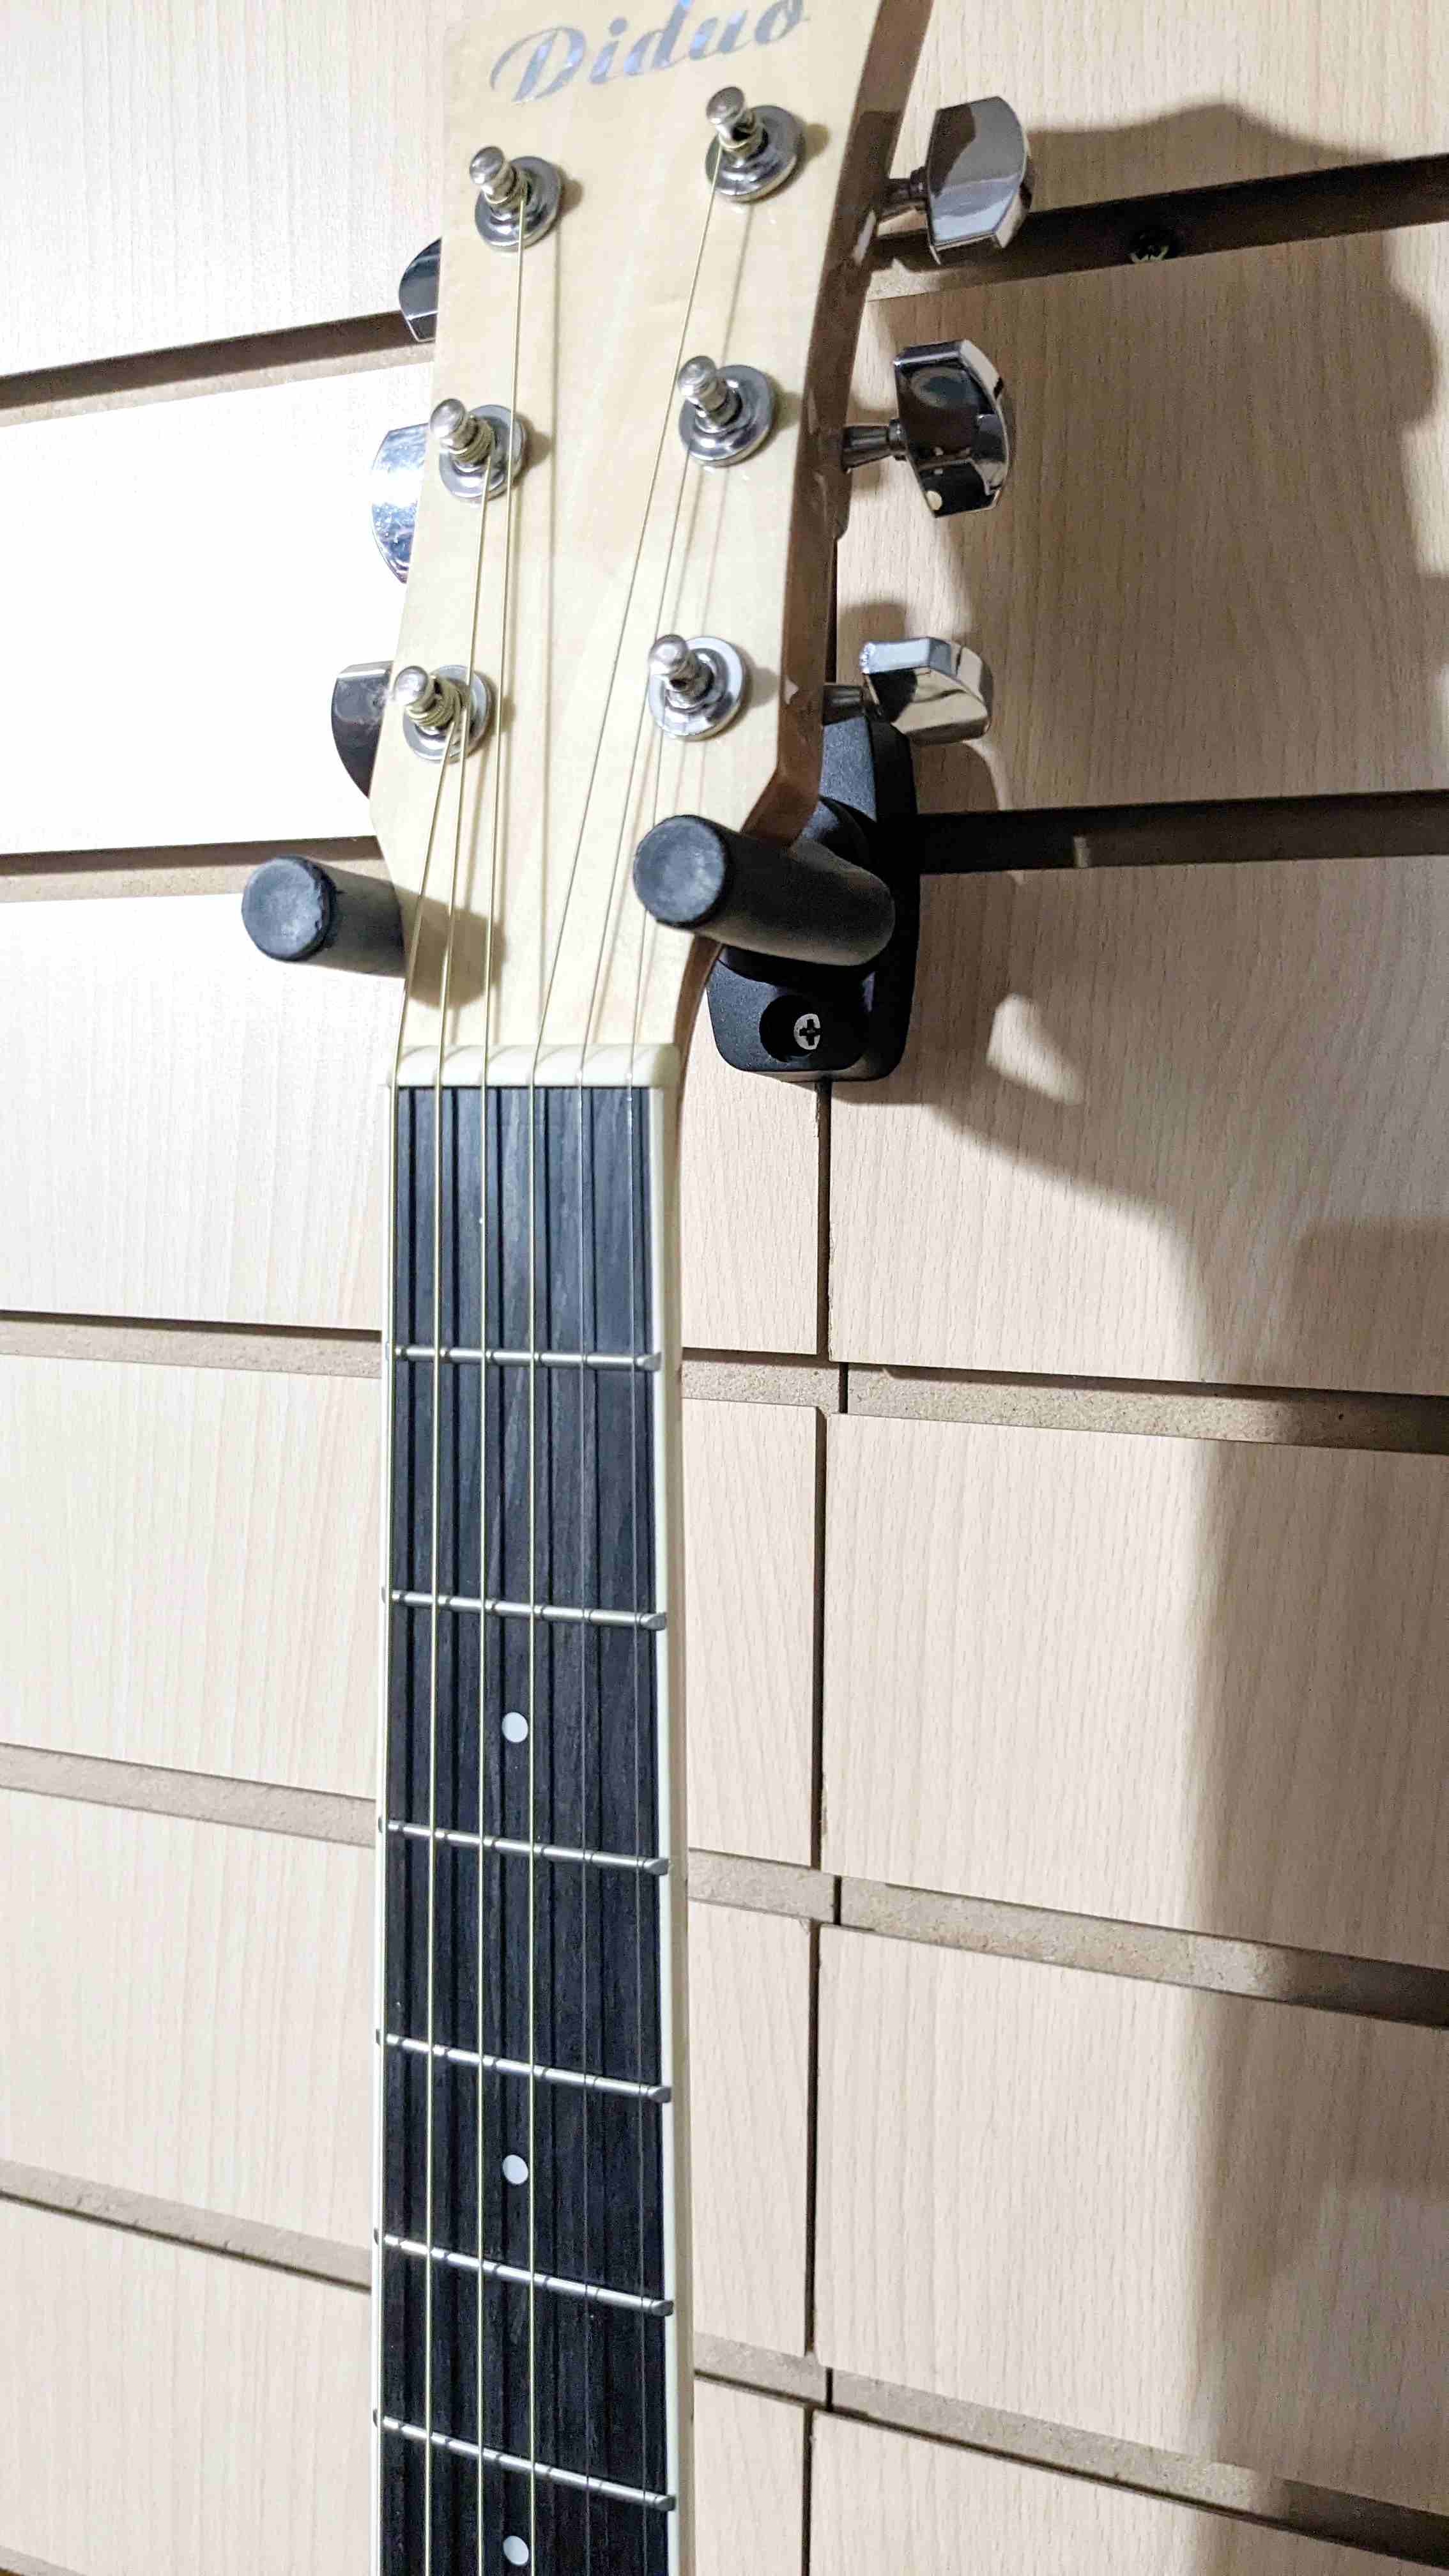 картинка Электро-акустическая гитара тонкая с вырезом  от магазина 7 Нот Уральск